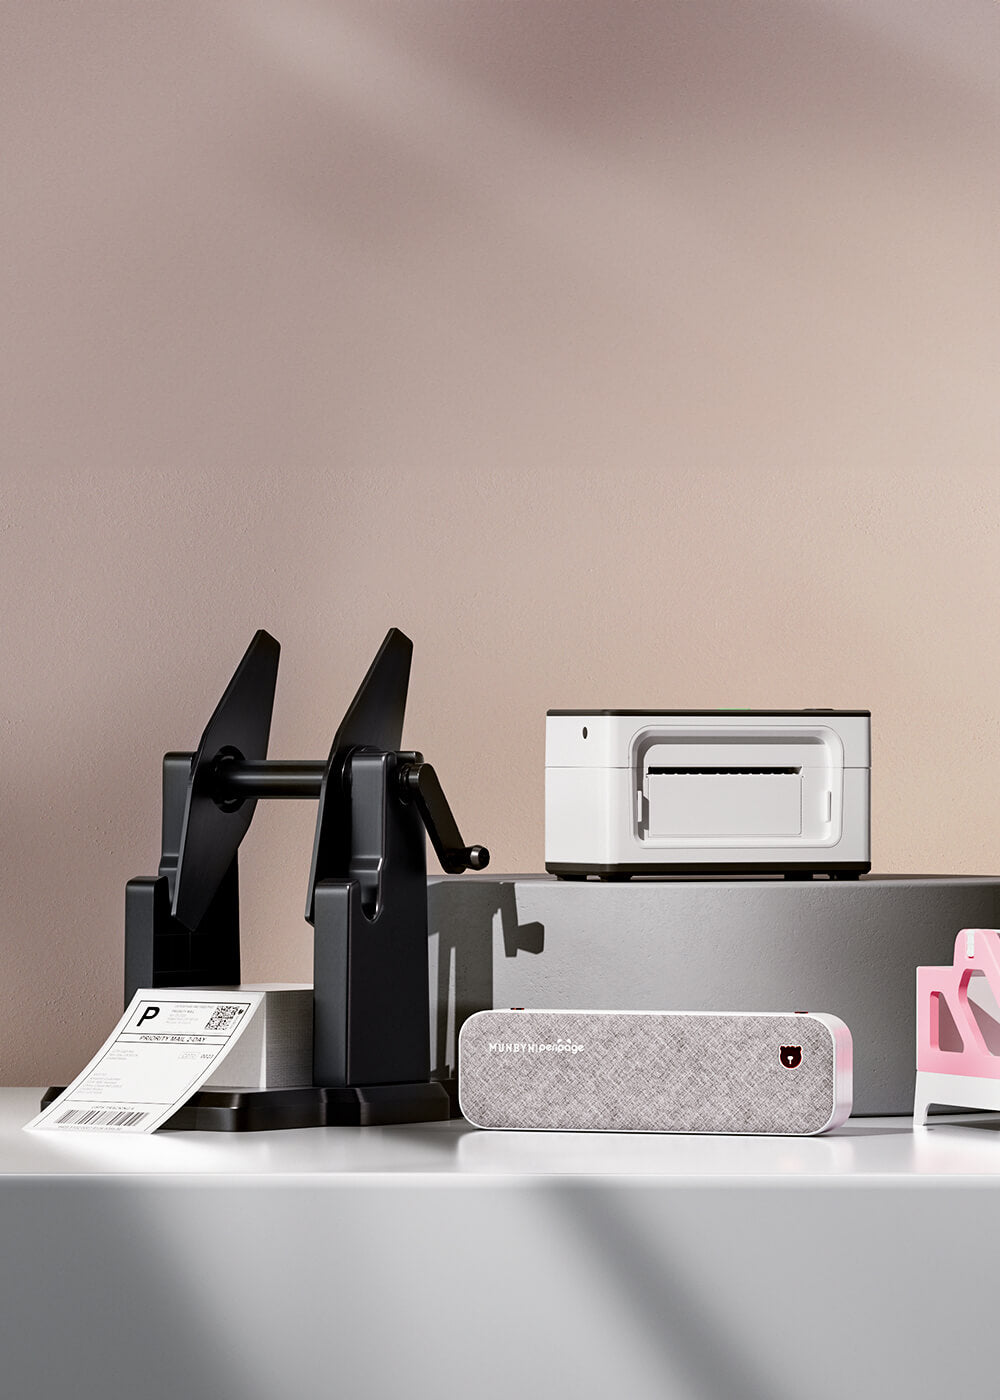 Portable Wireless Mini Photo Printer Imprimez Des Photos - Temu